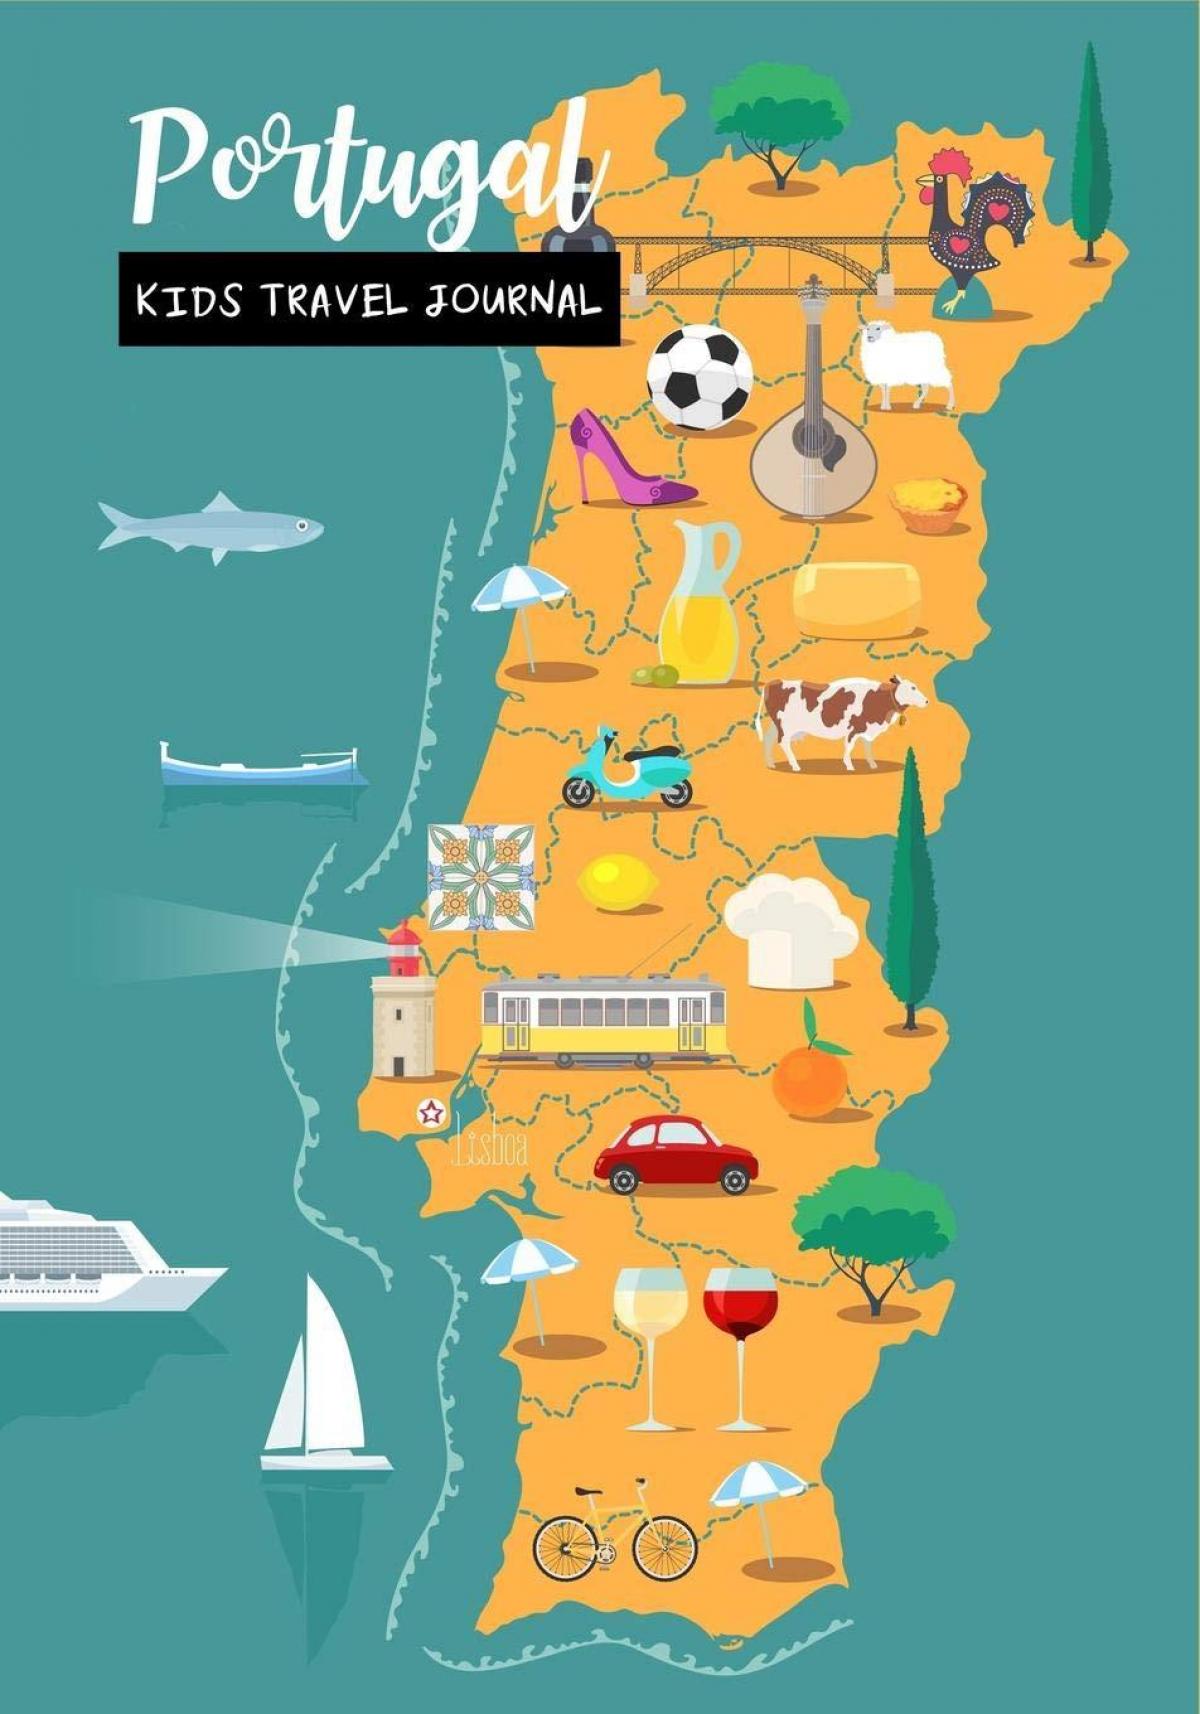 Mapa turístico de Portugal: atracções turísticas e monumentos de